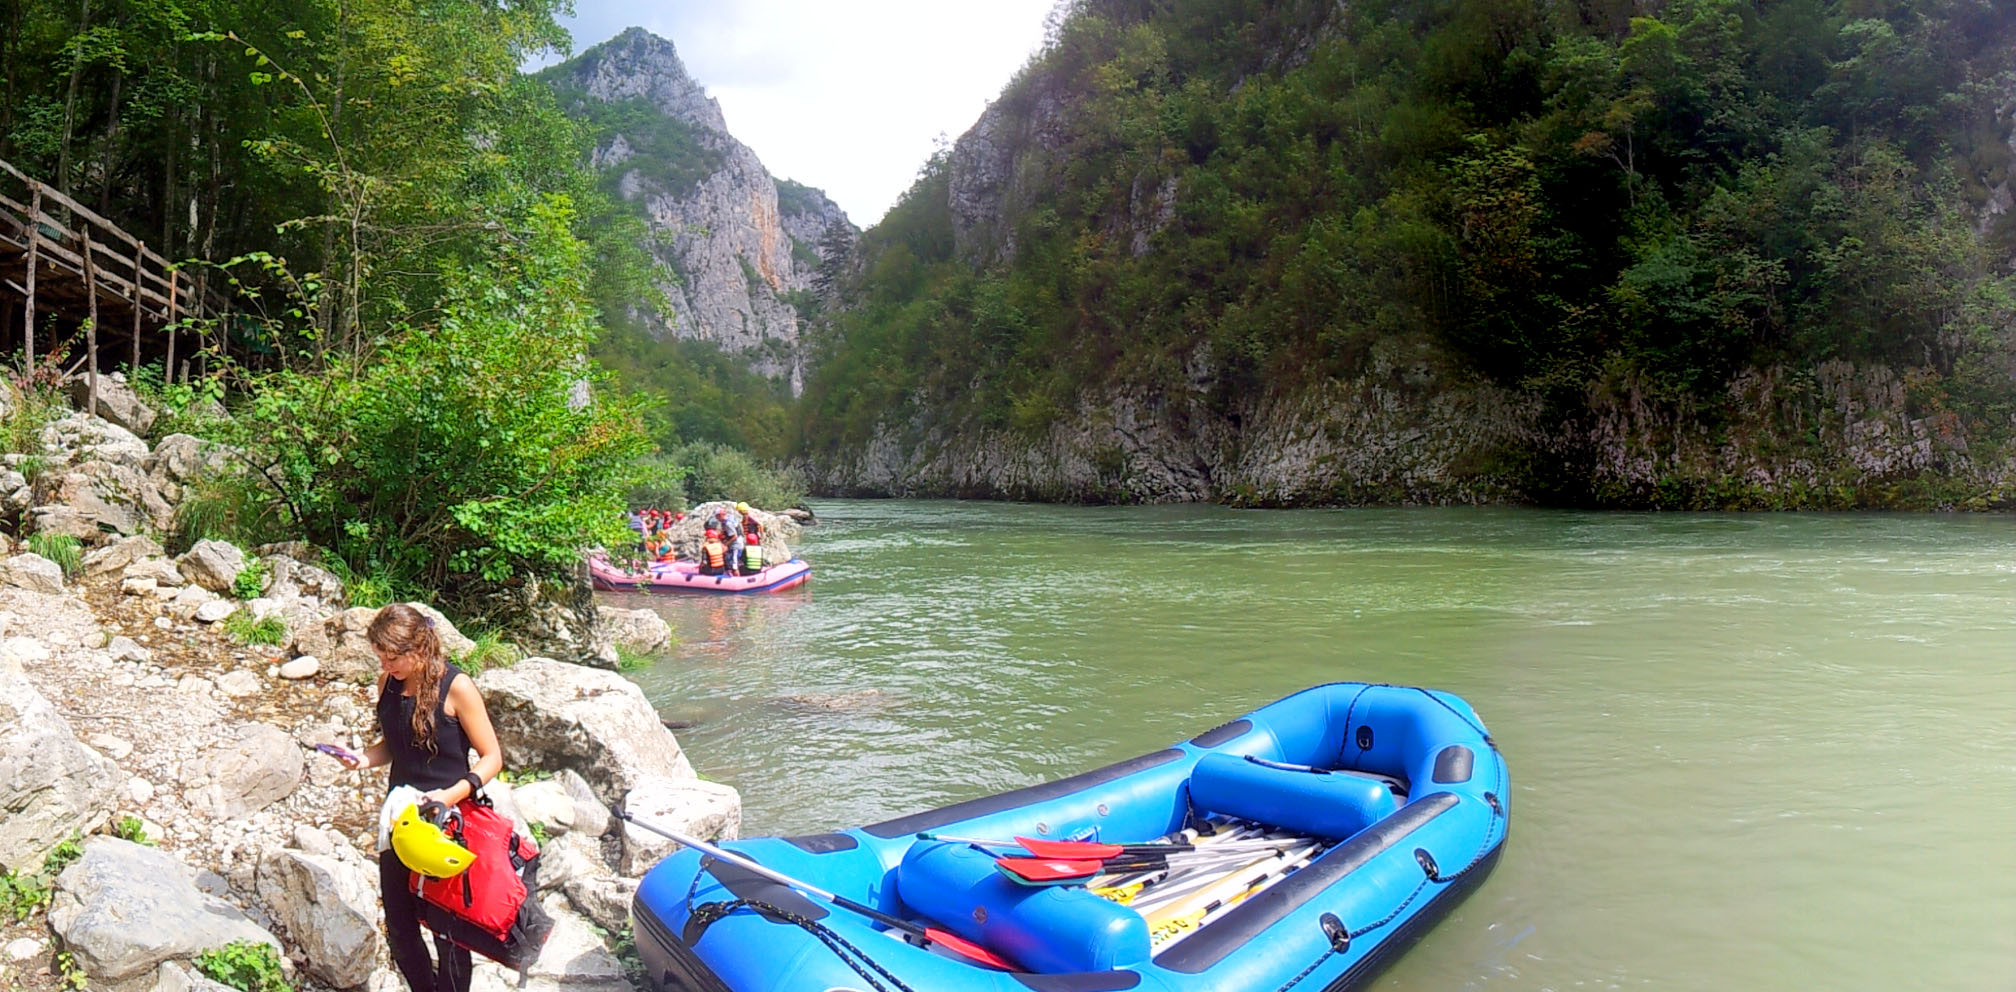 Hemaposesesvalises_montenegro_rafting_canyon_de_la_piva_tara_scepan_polje_travel_voyage_blog15